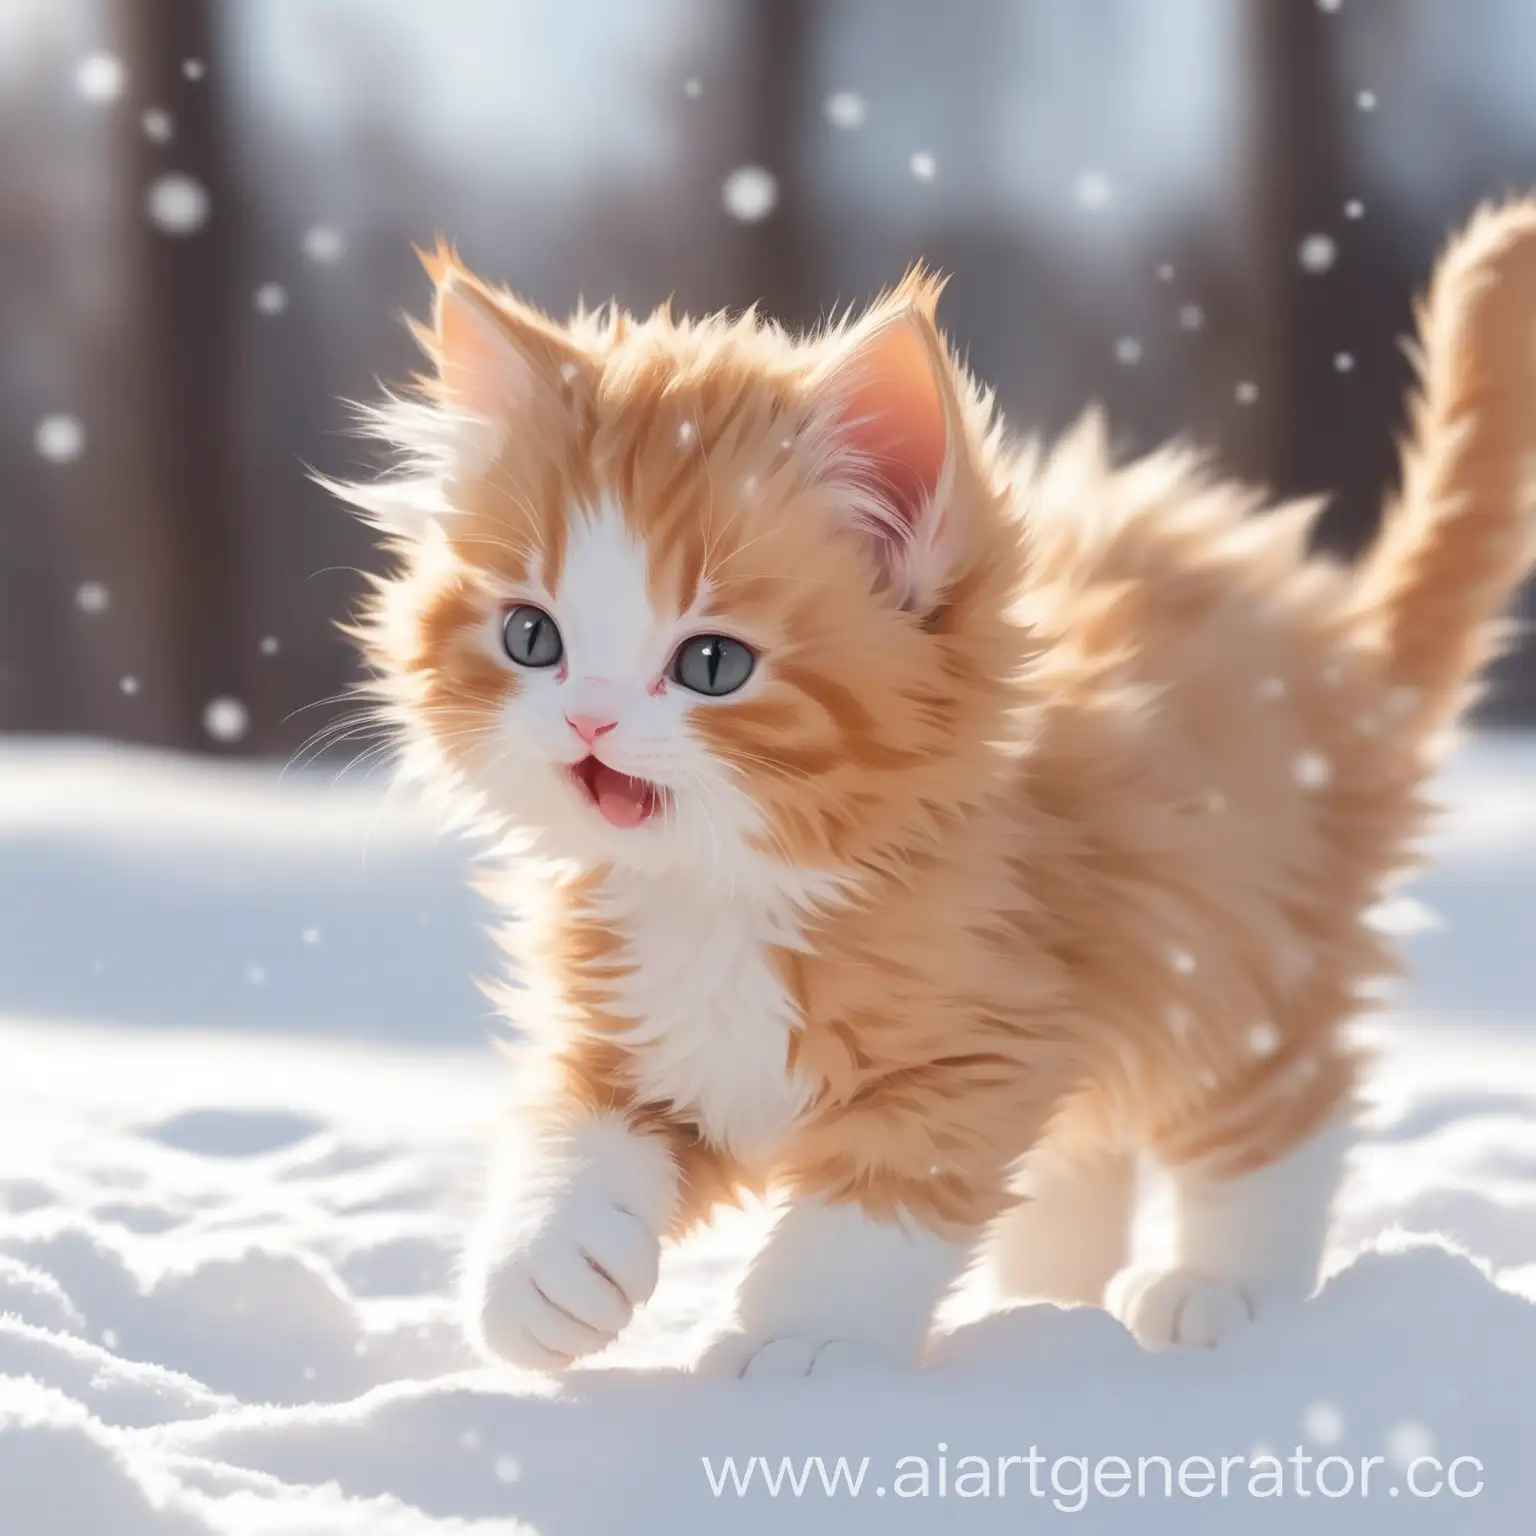 Playful-GingerandWhite-Kitten-Frolicking-in-Winter-Snow